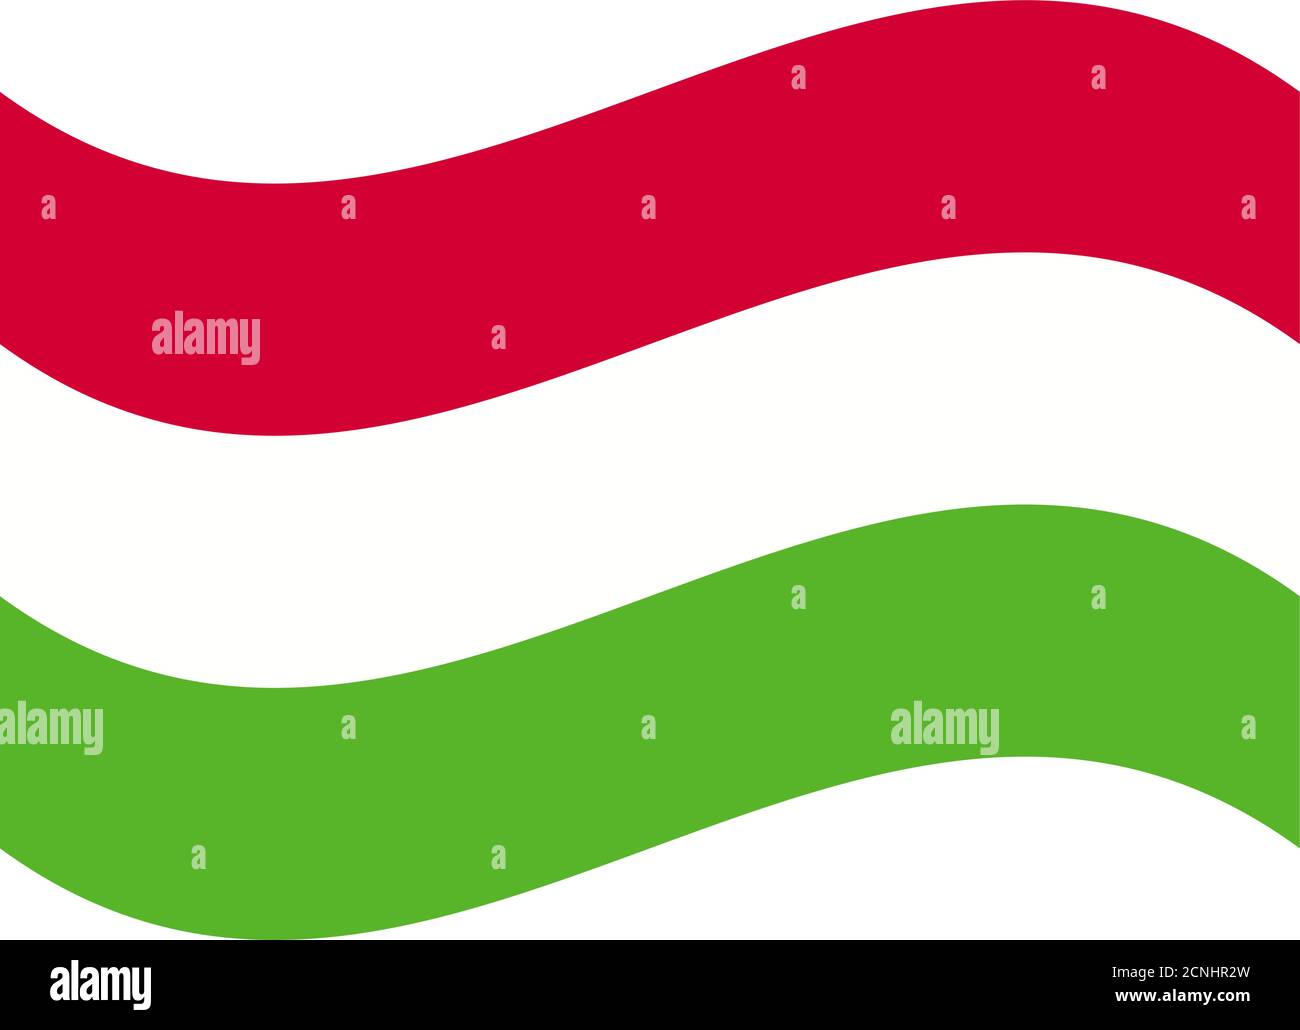 Ungarn Flagge, Farben und Proportionen richtig. Nationalflagge von Ungarn  Stock-Vektorgrafik - Alamy